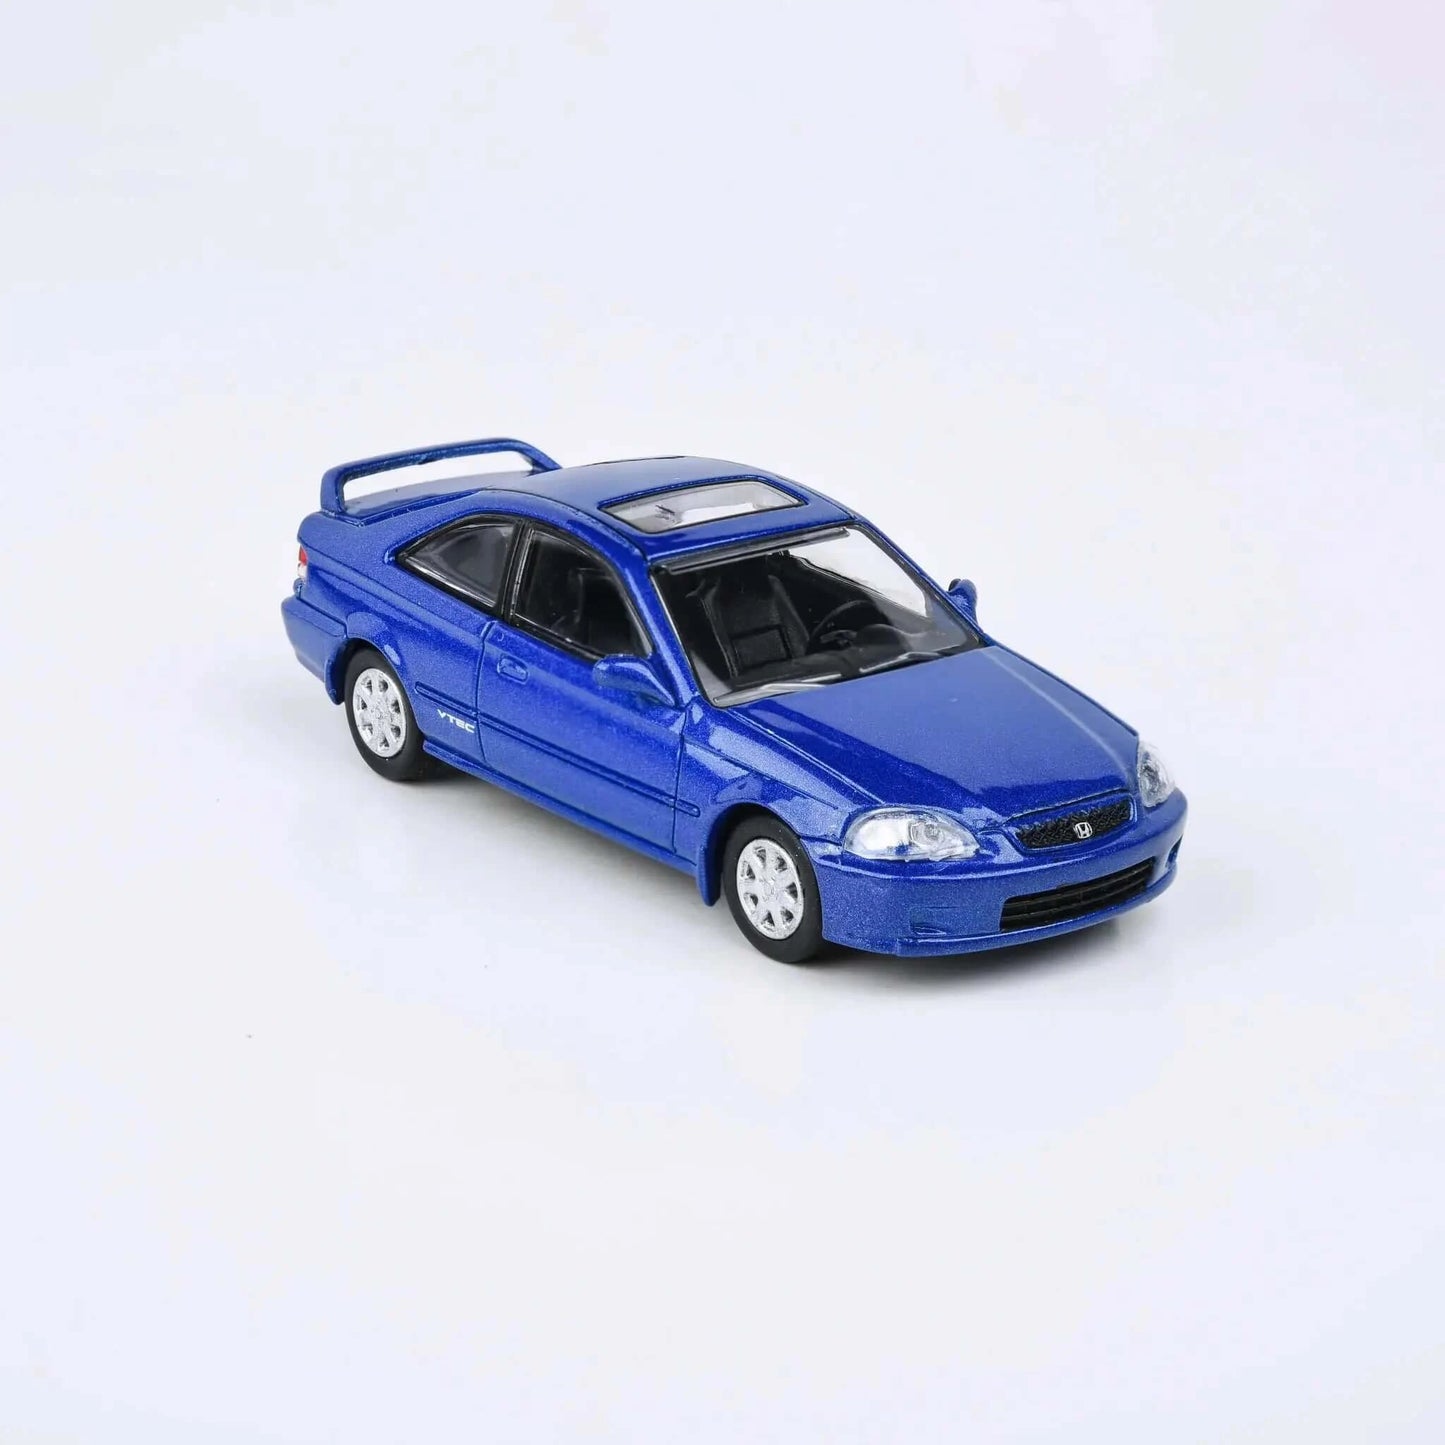 Honda civic Si EM1 1999 blue LHD Para64 1/64 | Motors Miniatures